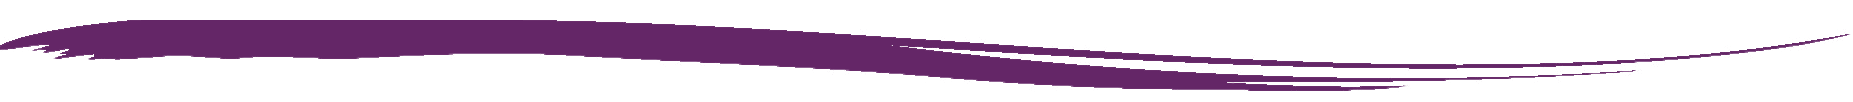 bob体育预测东北弧形紫色波浪标志